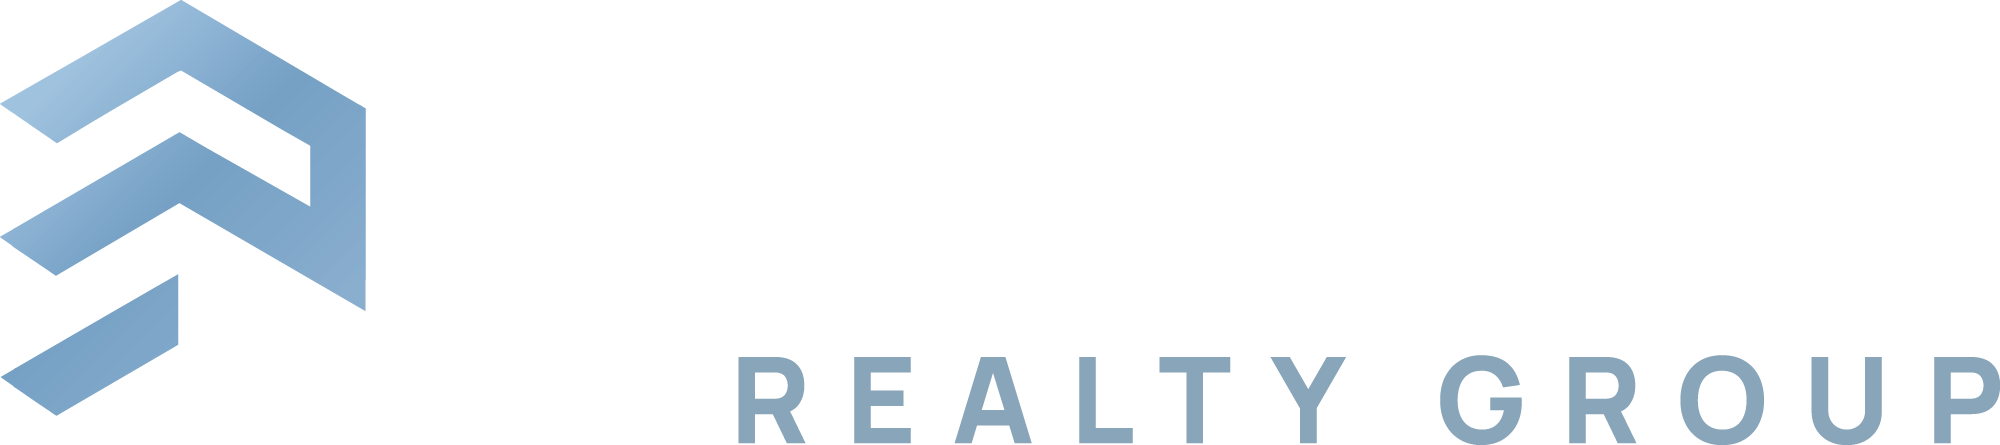 Prosper Realty Group